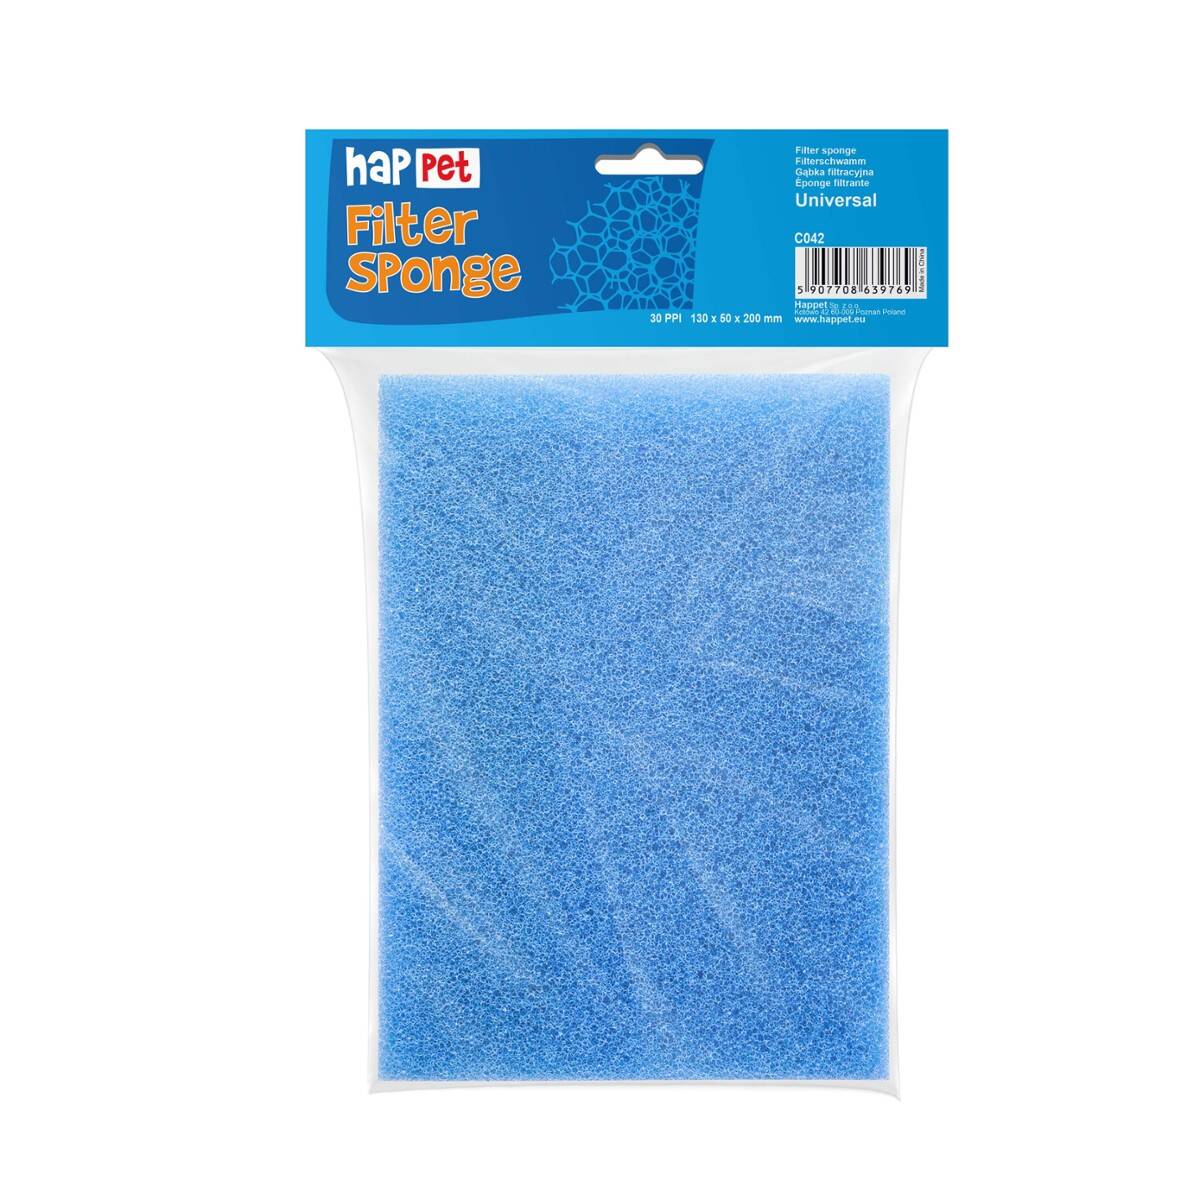 Medium fine filter sponge 30 ppi 20x13x5cm Happet (S-C042SN)